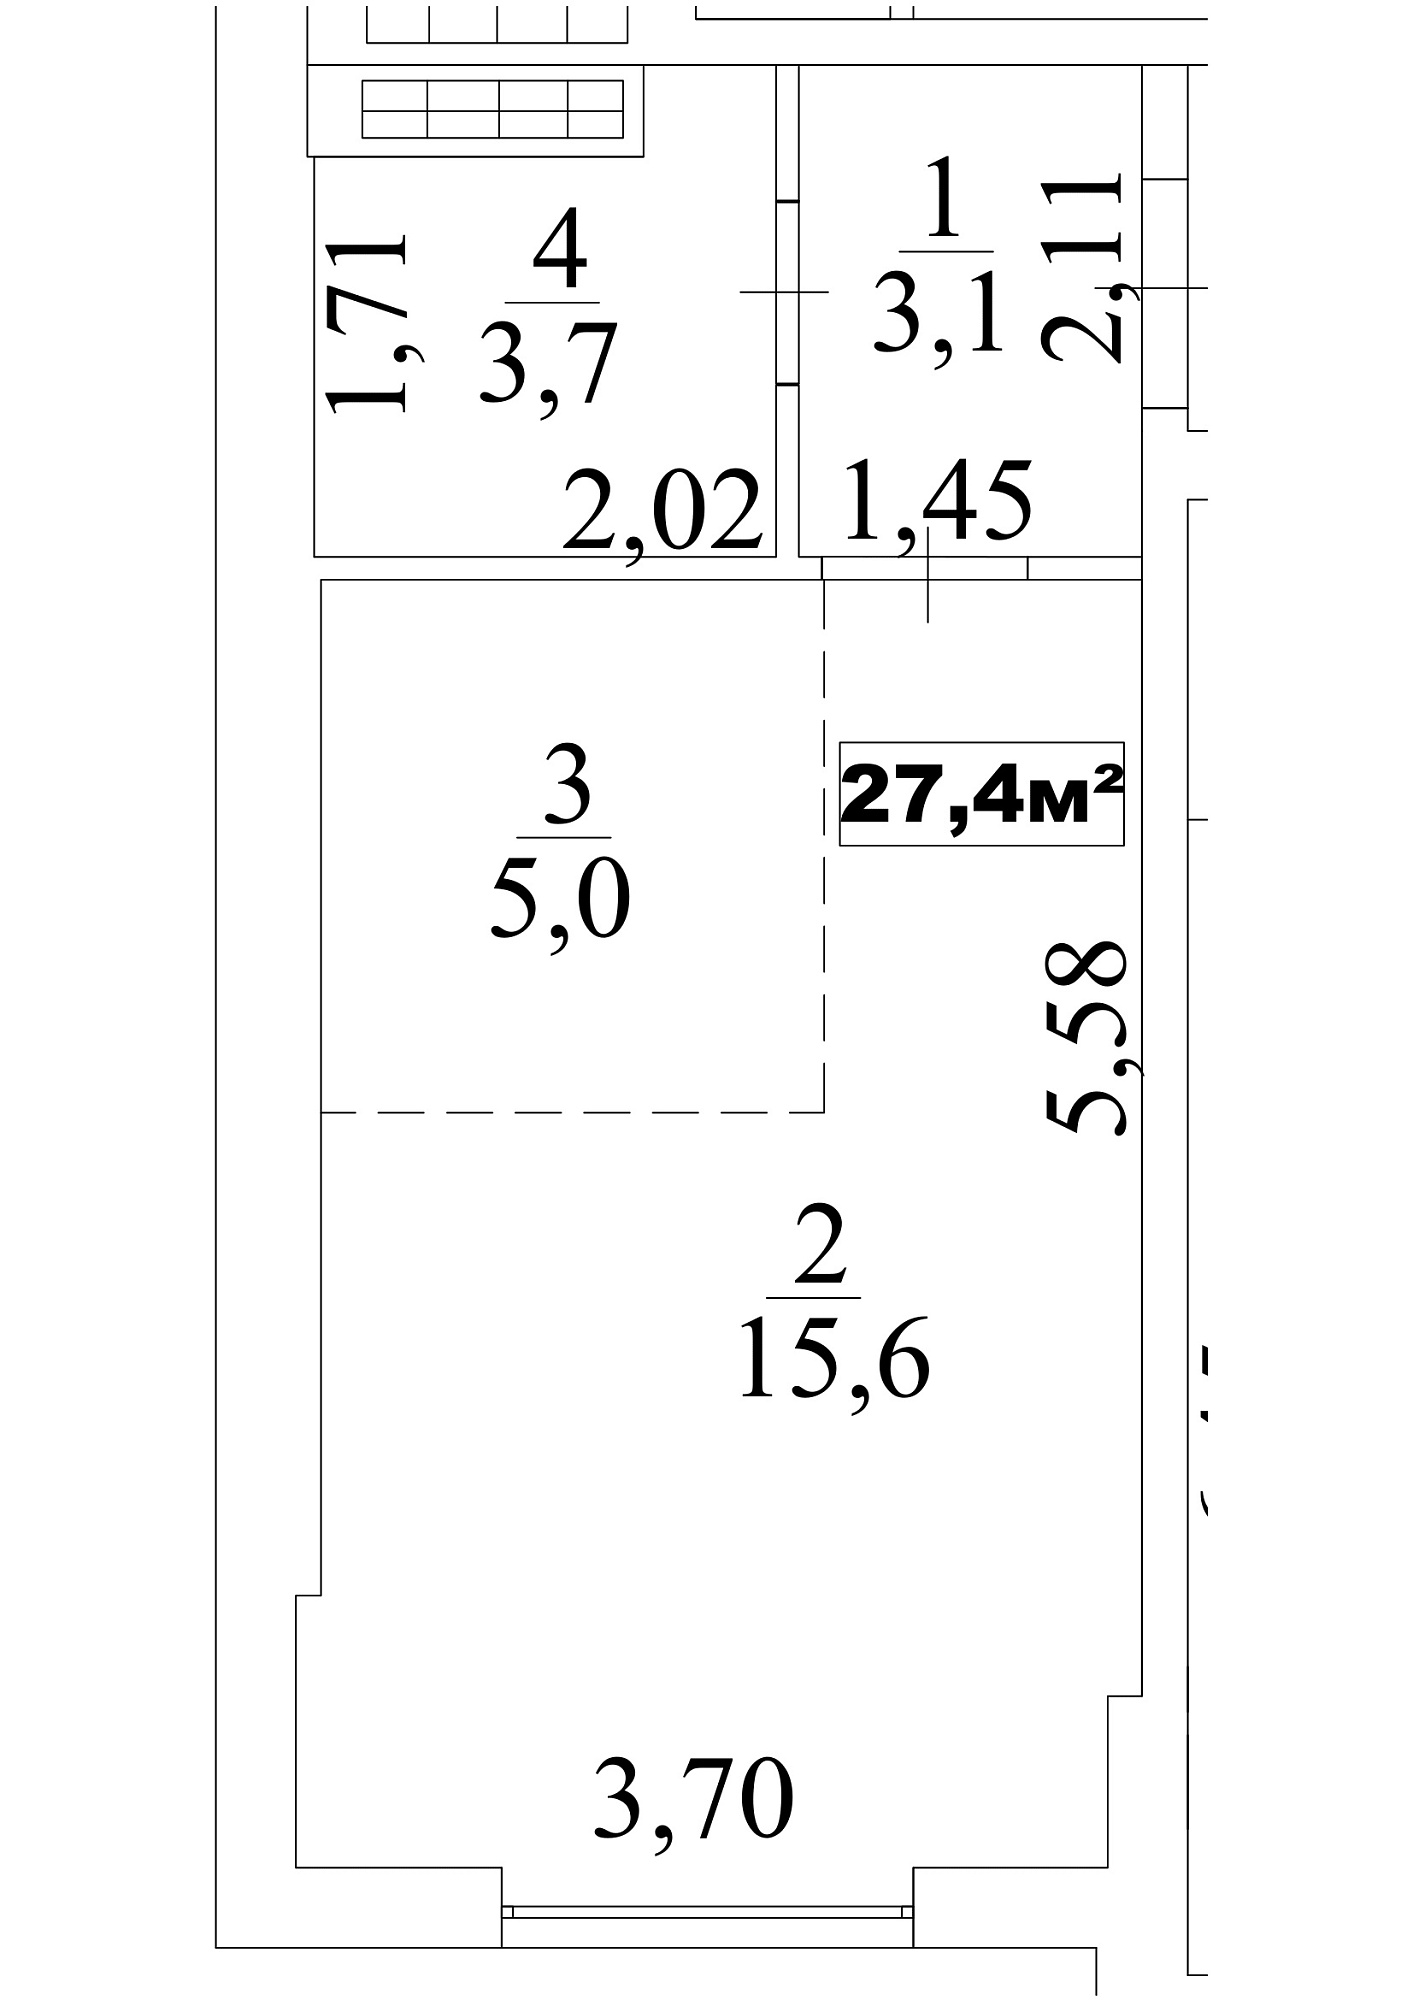 Планування Smart-квартира площею 27.4м2, AB-10-04/0030а.